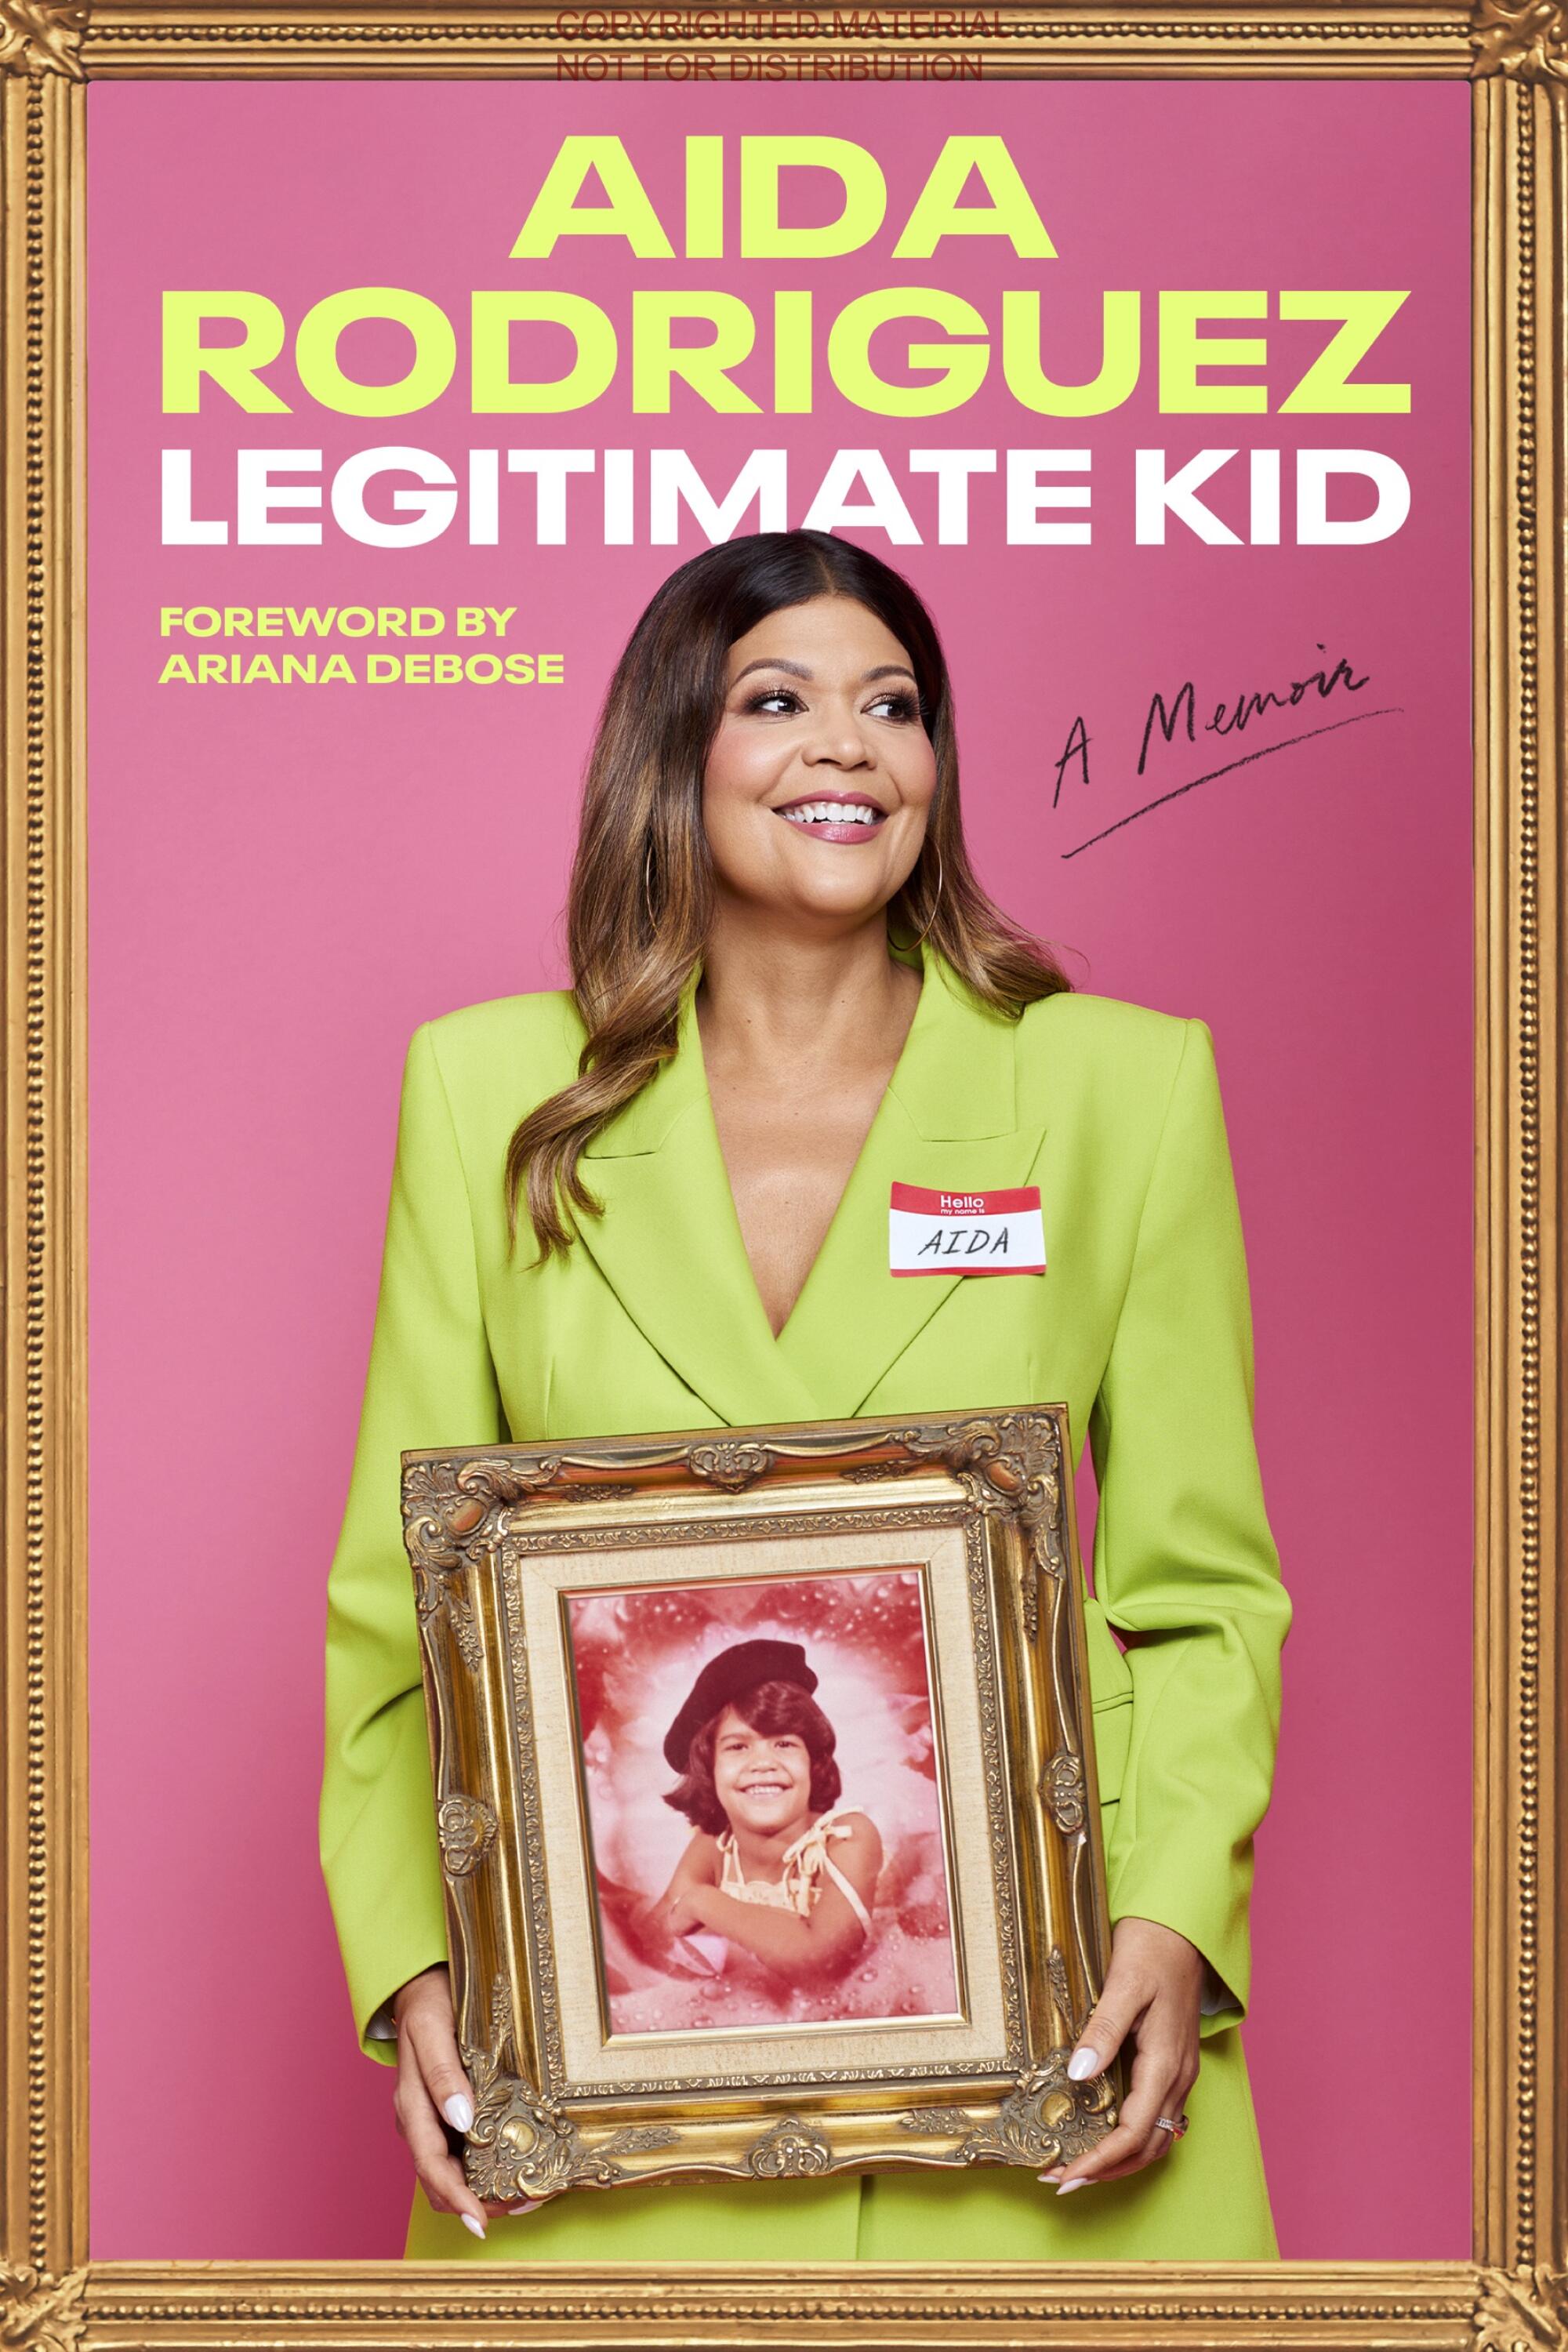 "Legitimate Kid: A Memoir" book cover